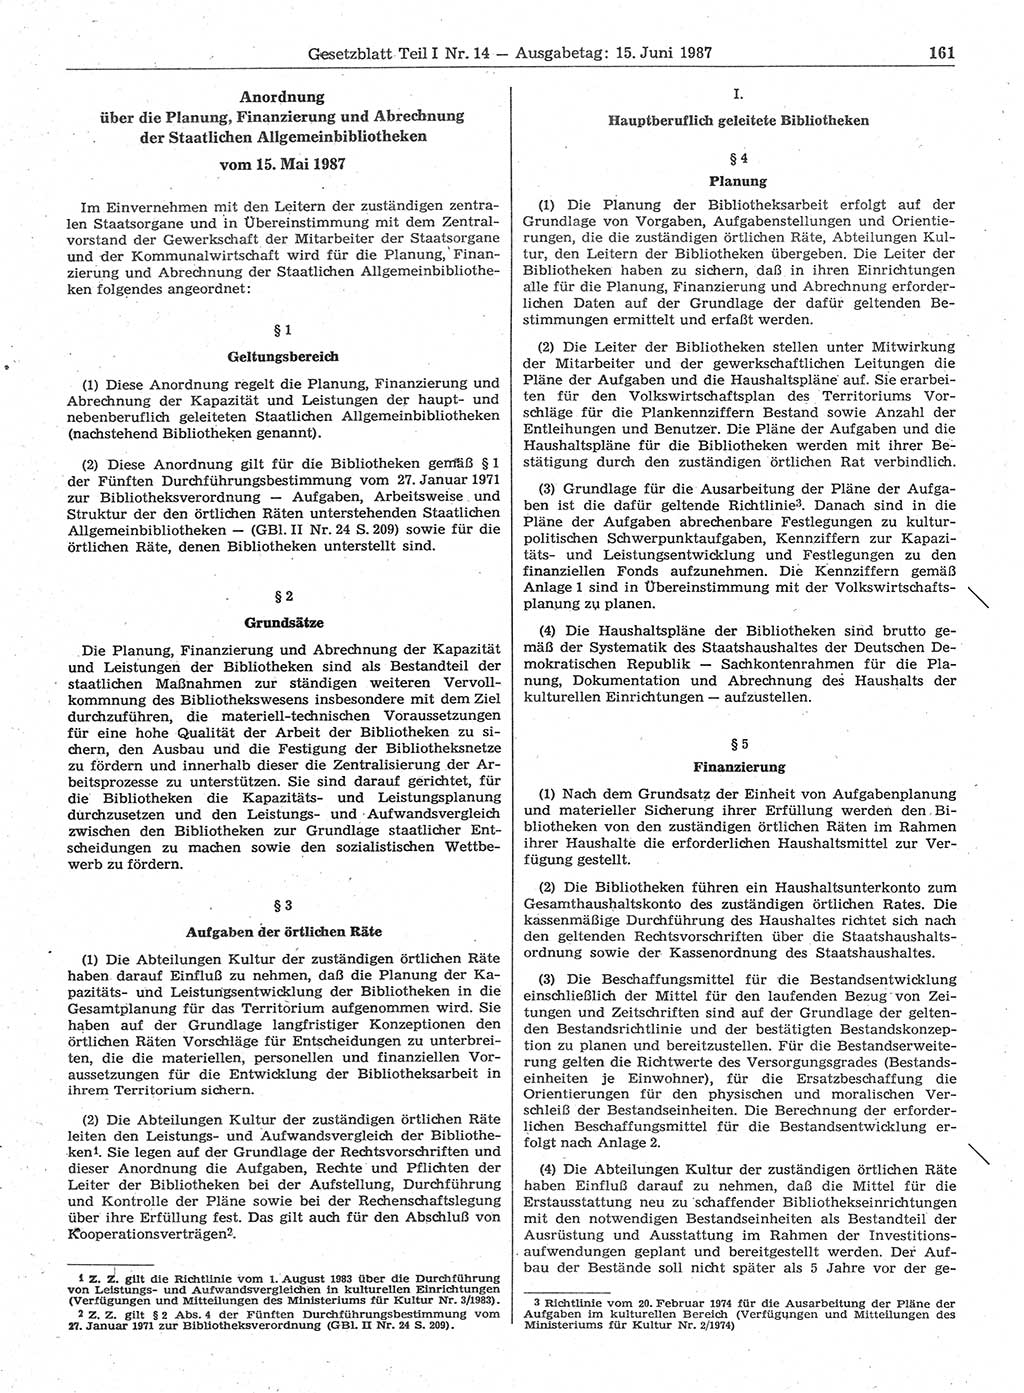 Gesetzblatt (GBl.) der Deutschen Demokratischen Republik (DDR) Teil Ⅰ 1987, Seite 161 (GBl. DDR Ⅰ 1987, S. 161)